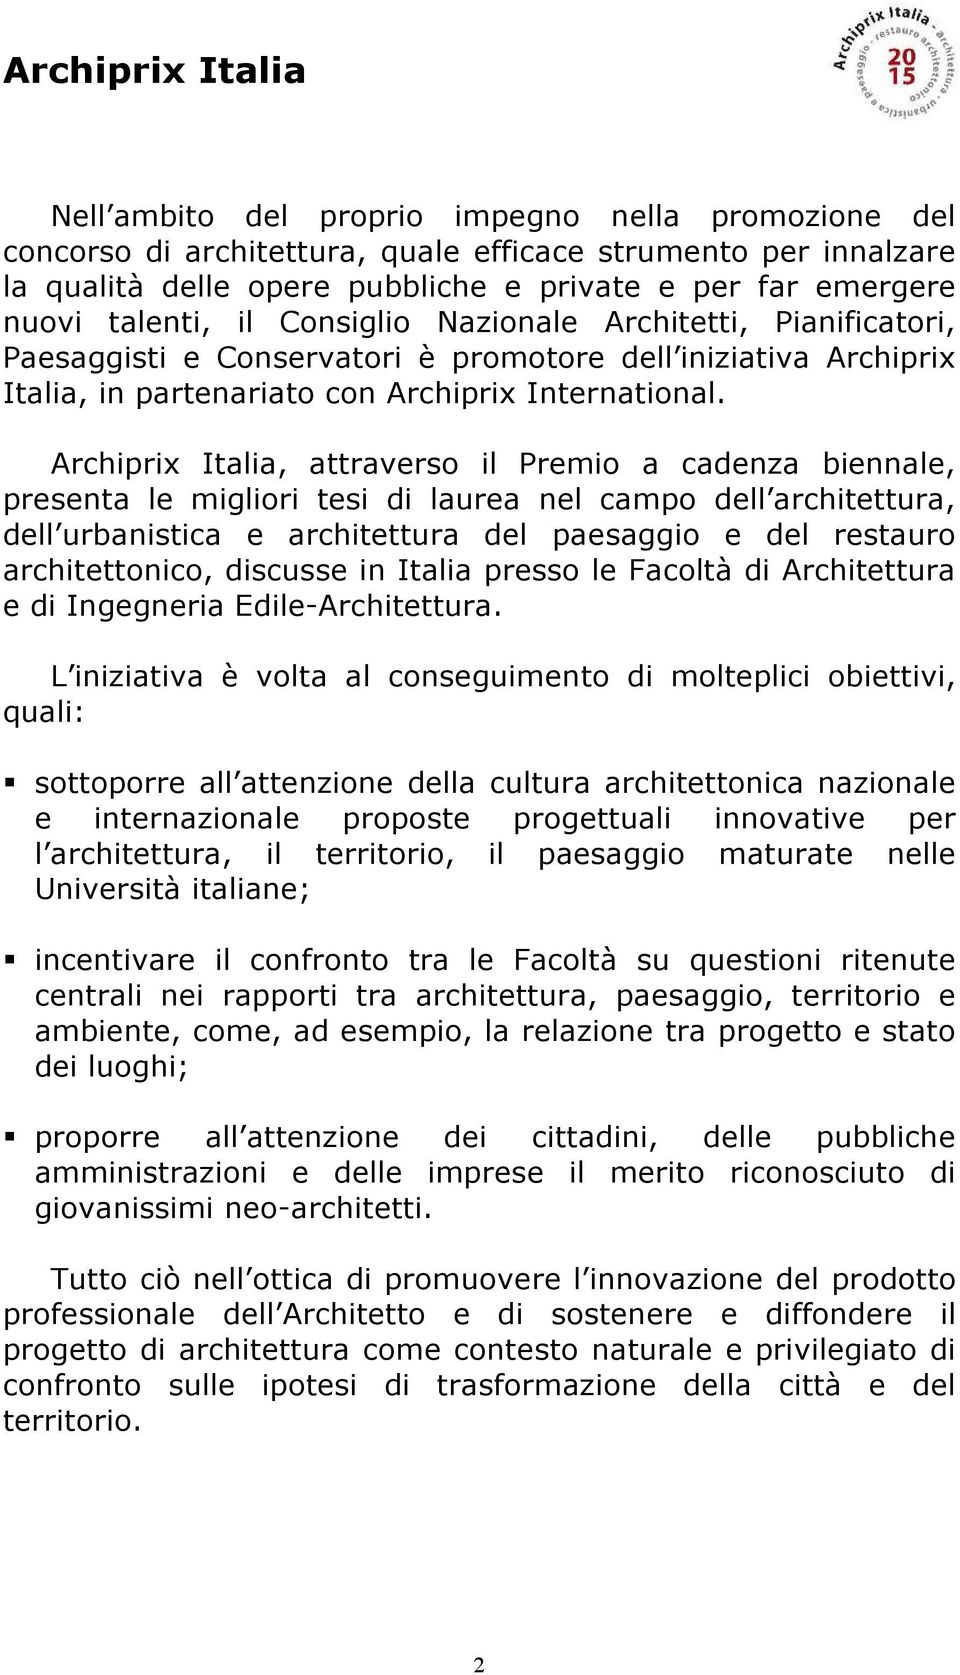 Archiprix Italia, attraverso il Premio a cadenza biennale, presenta le migliori tesi di laurea nel campo dell architettura, dell urbanistica e architettura del paesaggio e del restauro